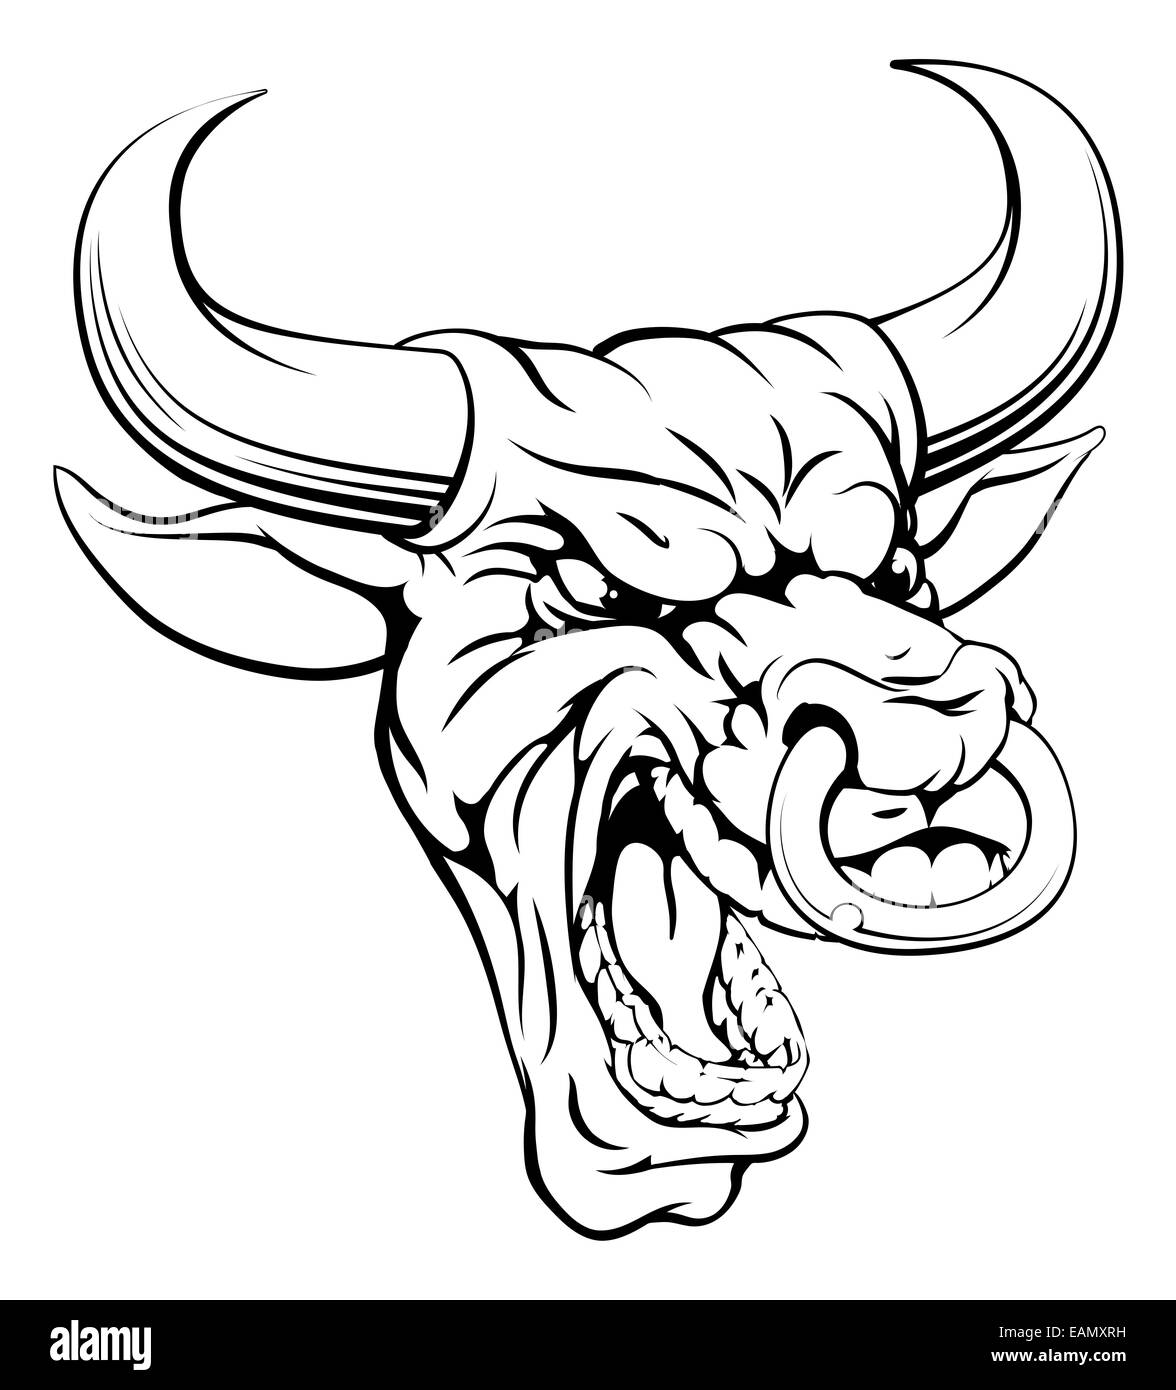 Un dessin d'un visage en colère à la mascotte de bull Banque D'Images